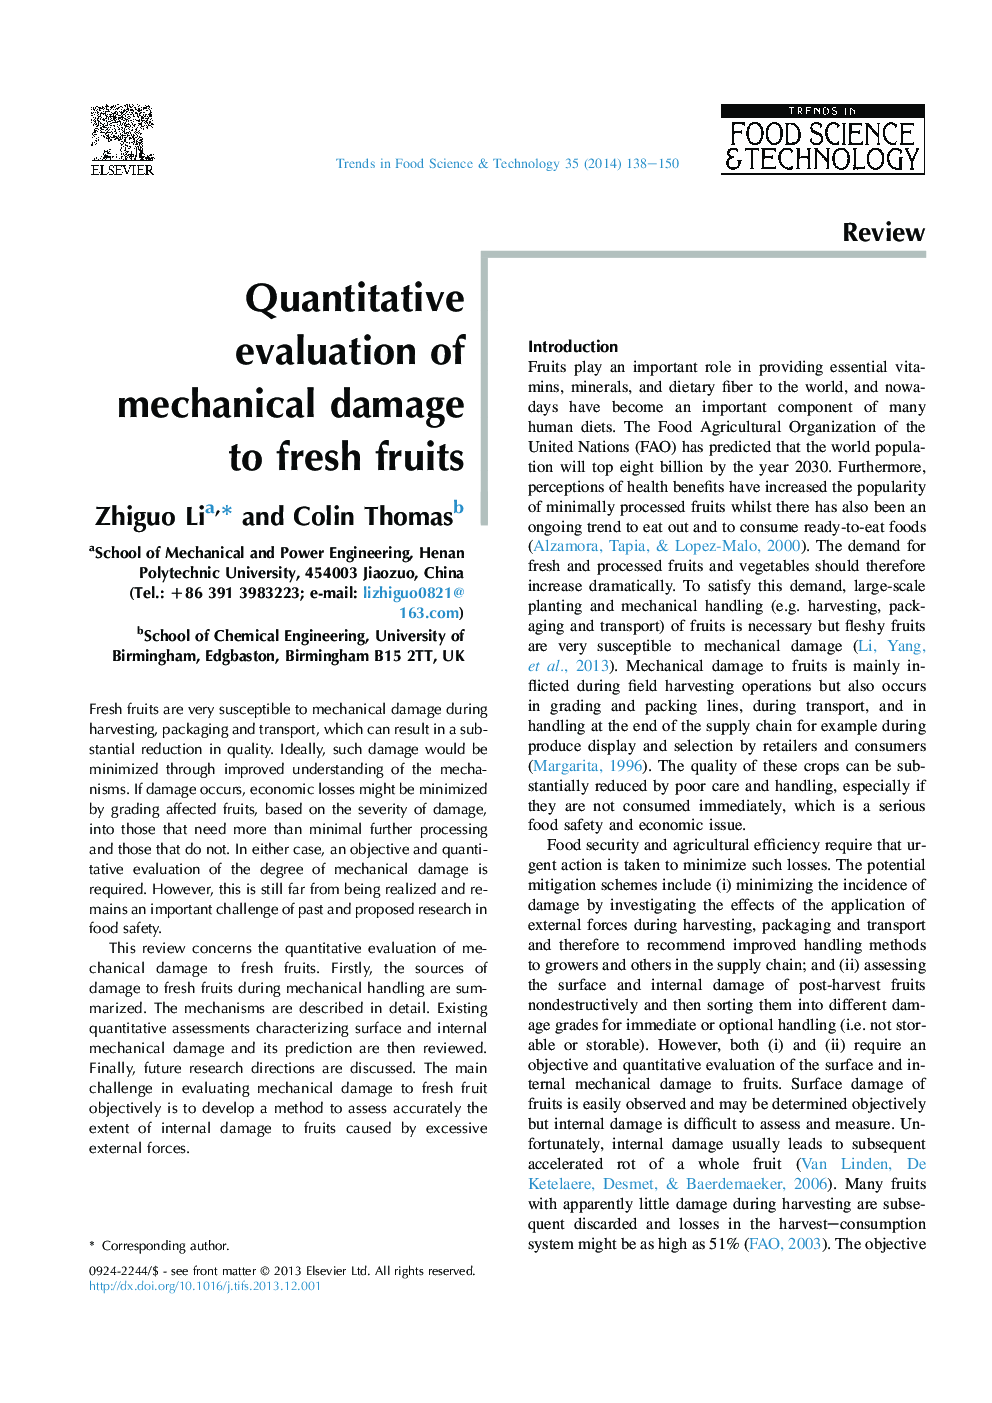 Quantitative evaluation of mechanical damage to fresh fruits